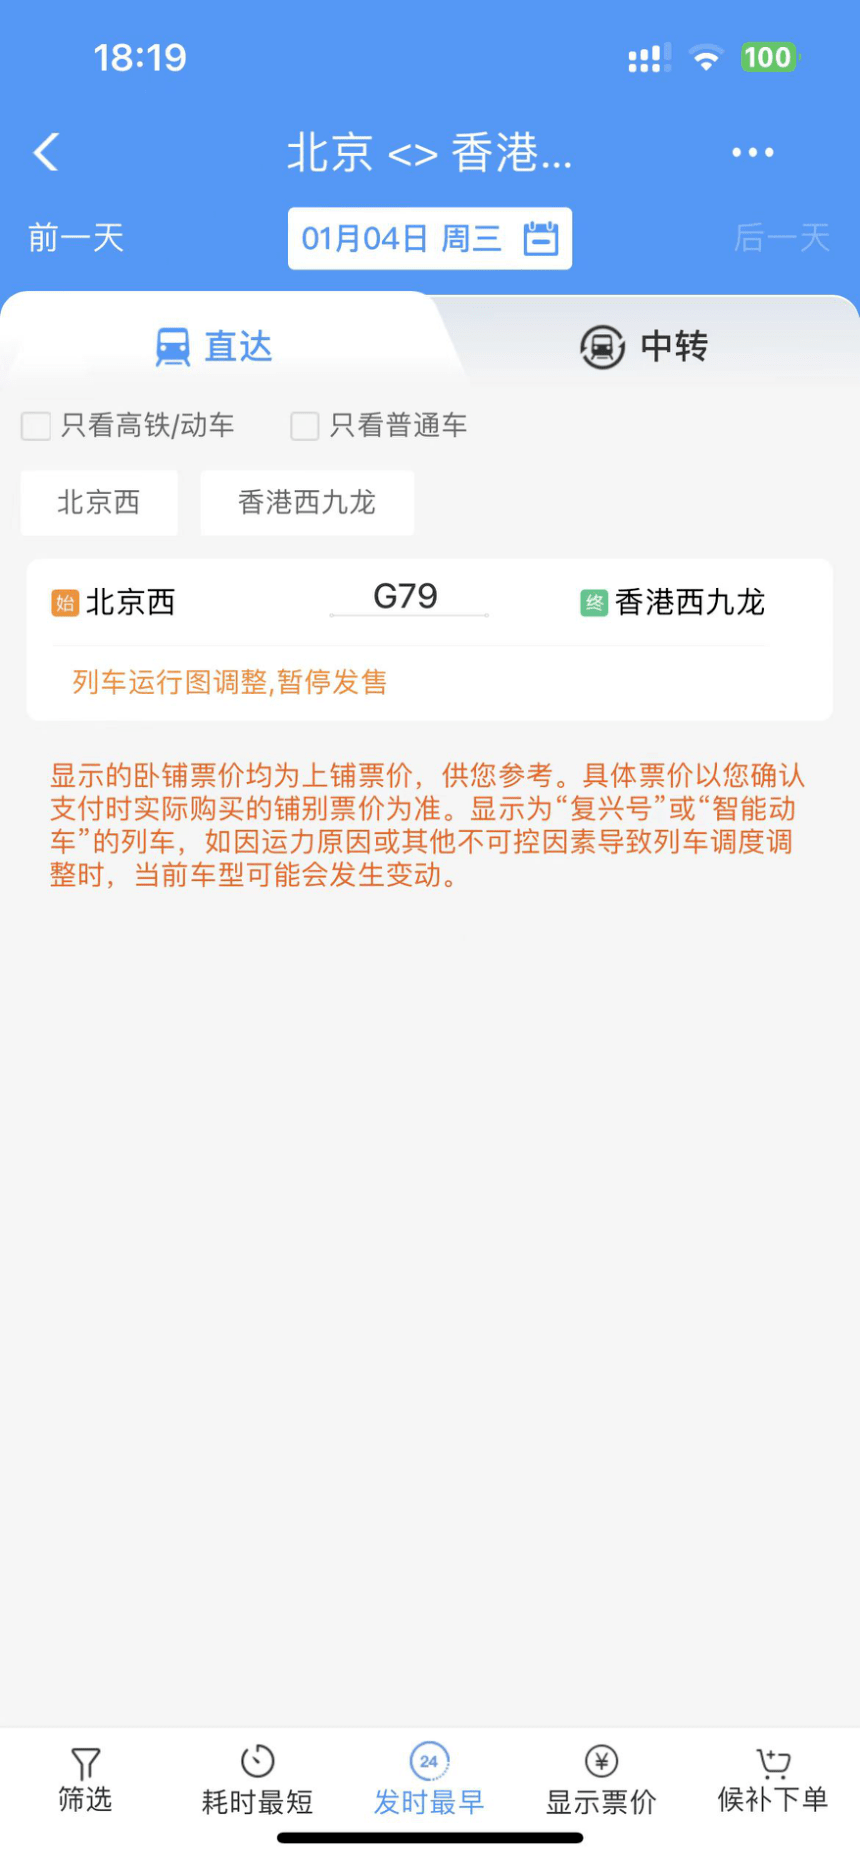 「12306 APP」出現1月4日由北京赴港列車班次，惟未能購買。網上圖片